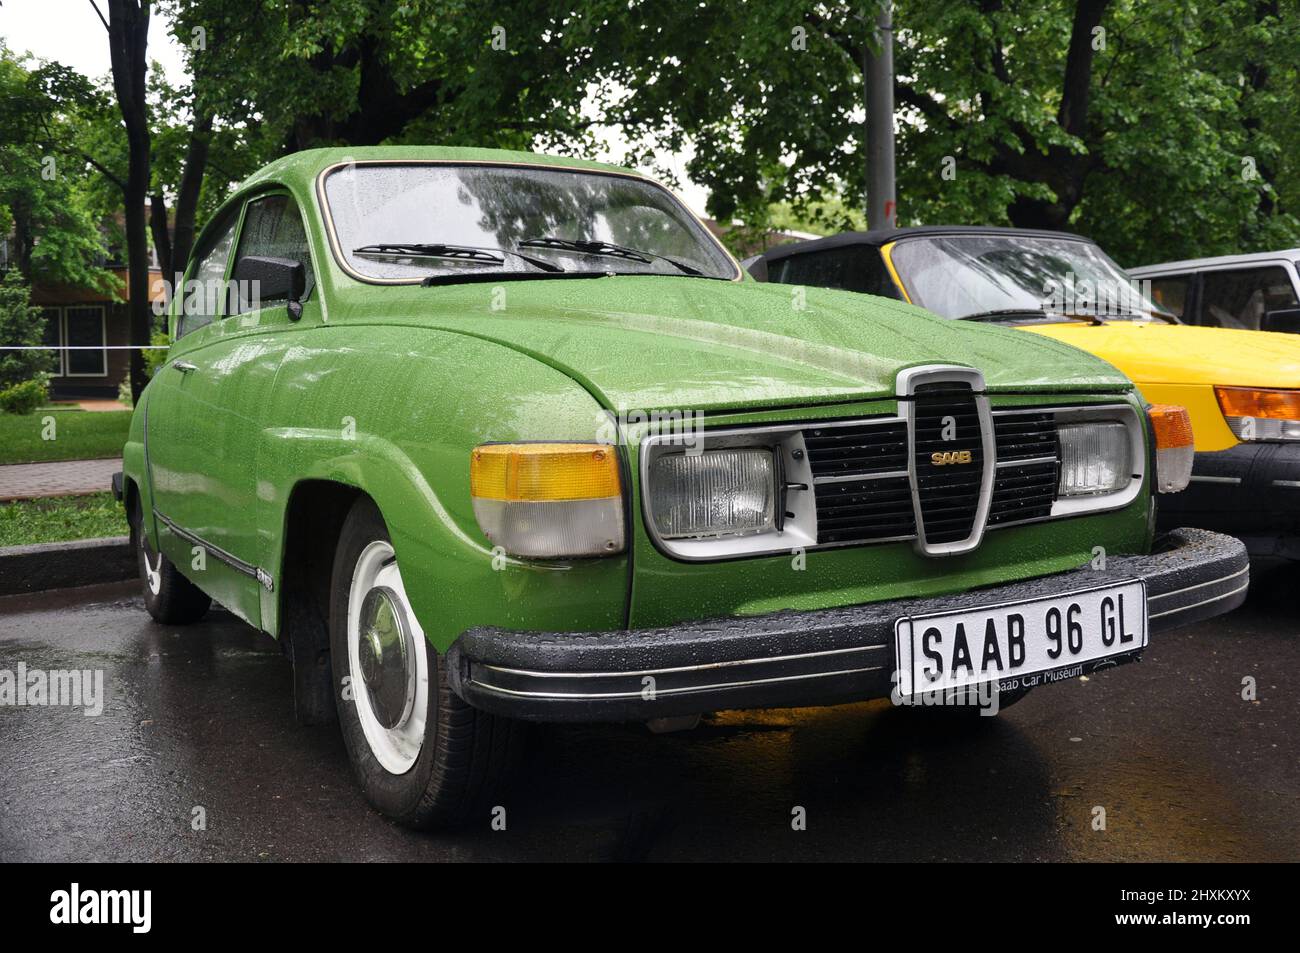 Mosca / Russia - 20 maggio 2018: Auto retrò classica Saab 96 del 1970s Foto Stock